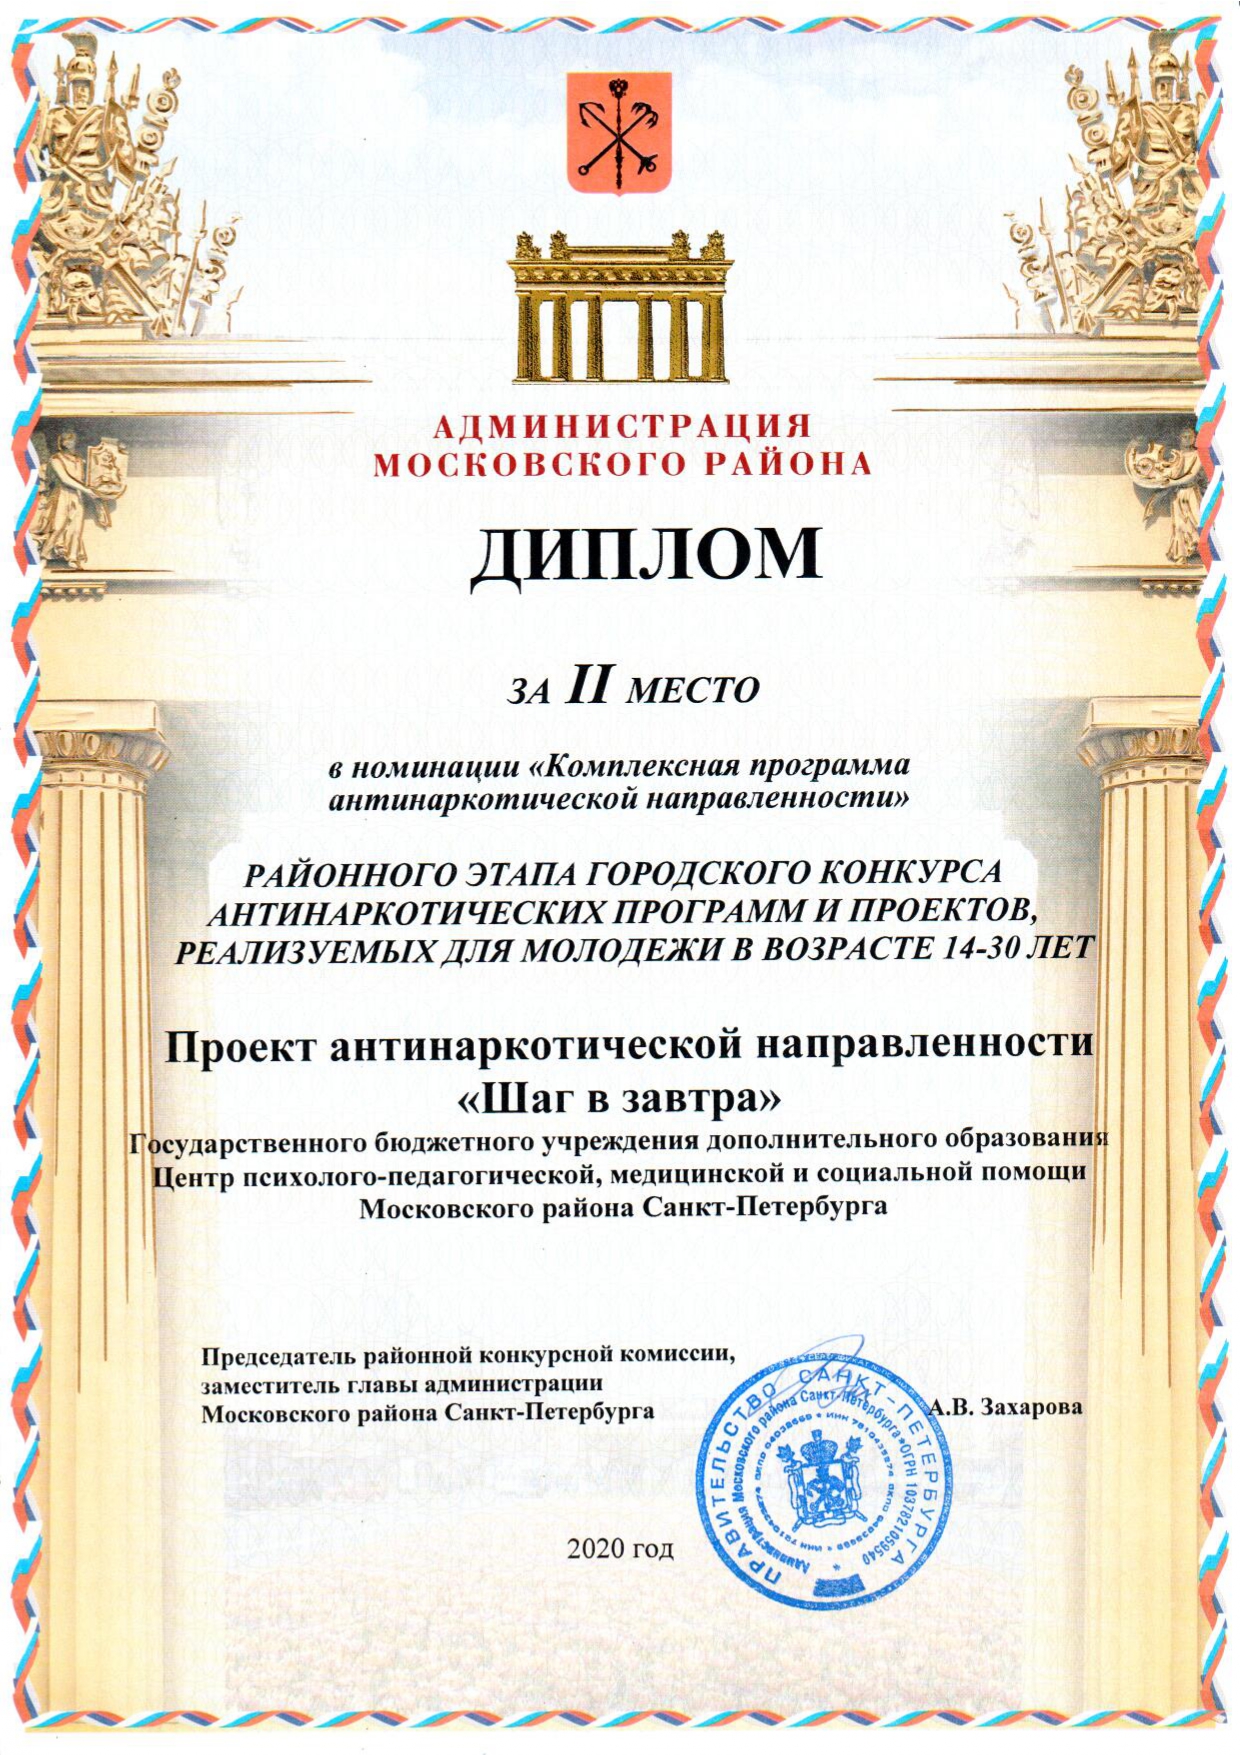 Диплом от администрации